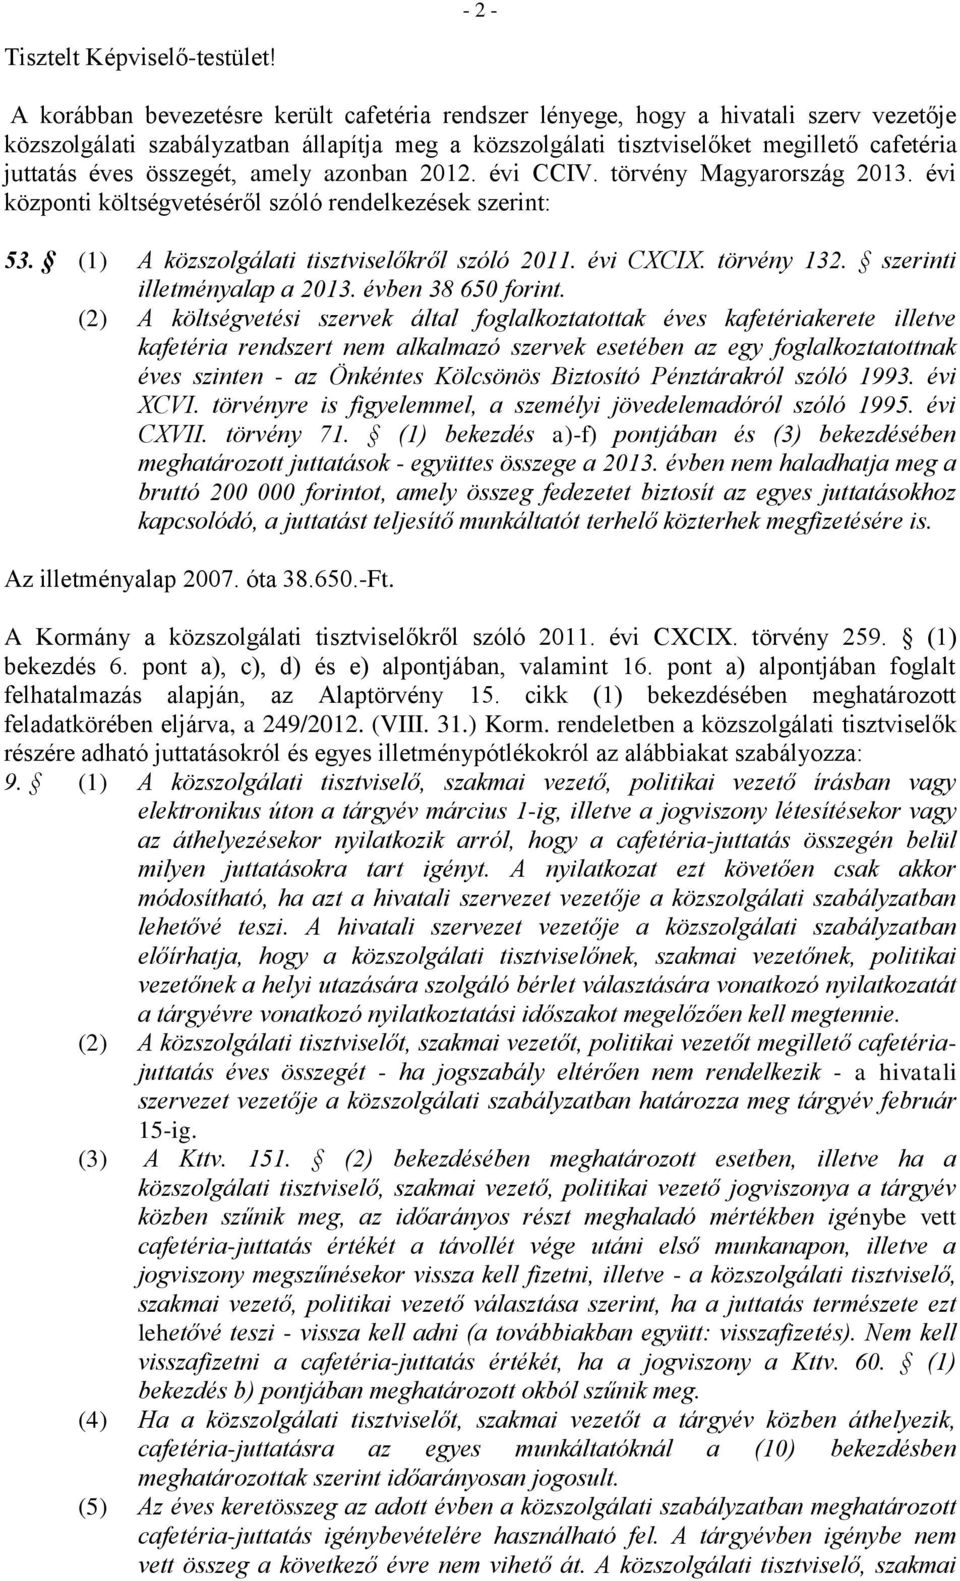 összegét, amely azonban 2012. évi CCIV. törvény Magyarország 2013. évi központi költségvetéséről szóló rendelkezések szerint: 53. (1) A közszolgálati tisztviselőkről szóló 2011. évi CXCIX.